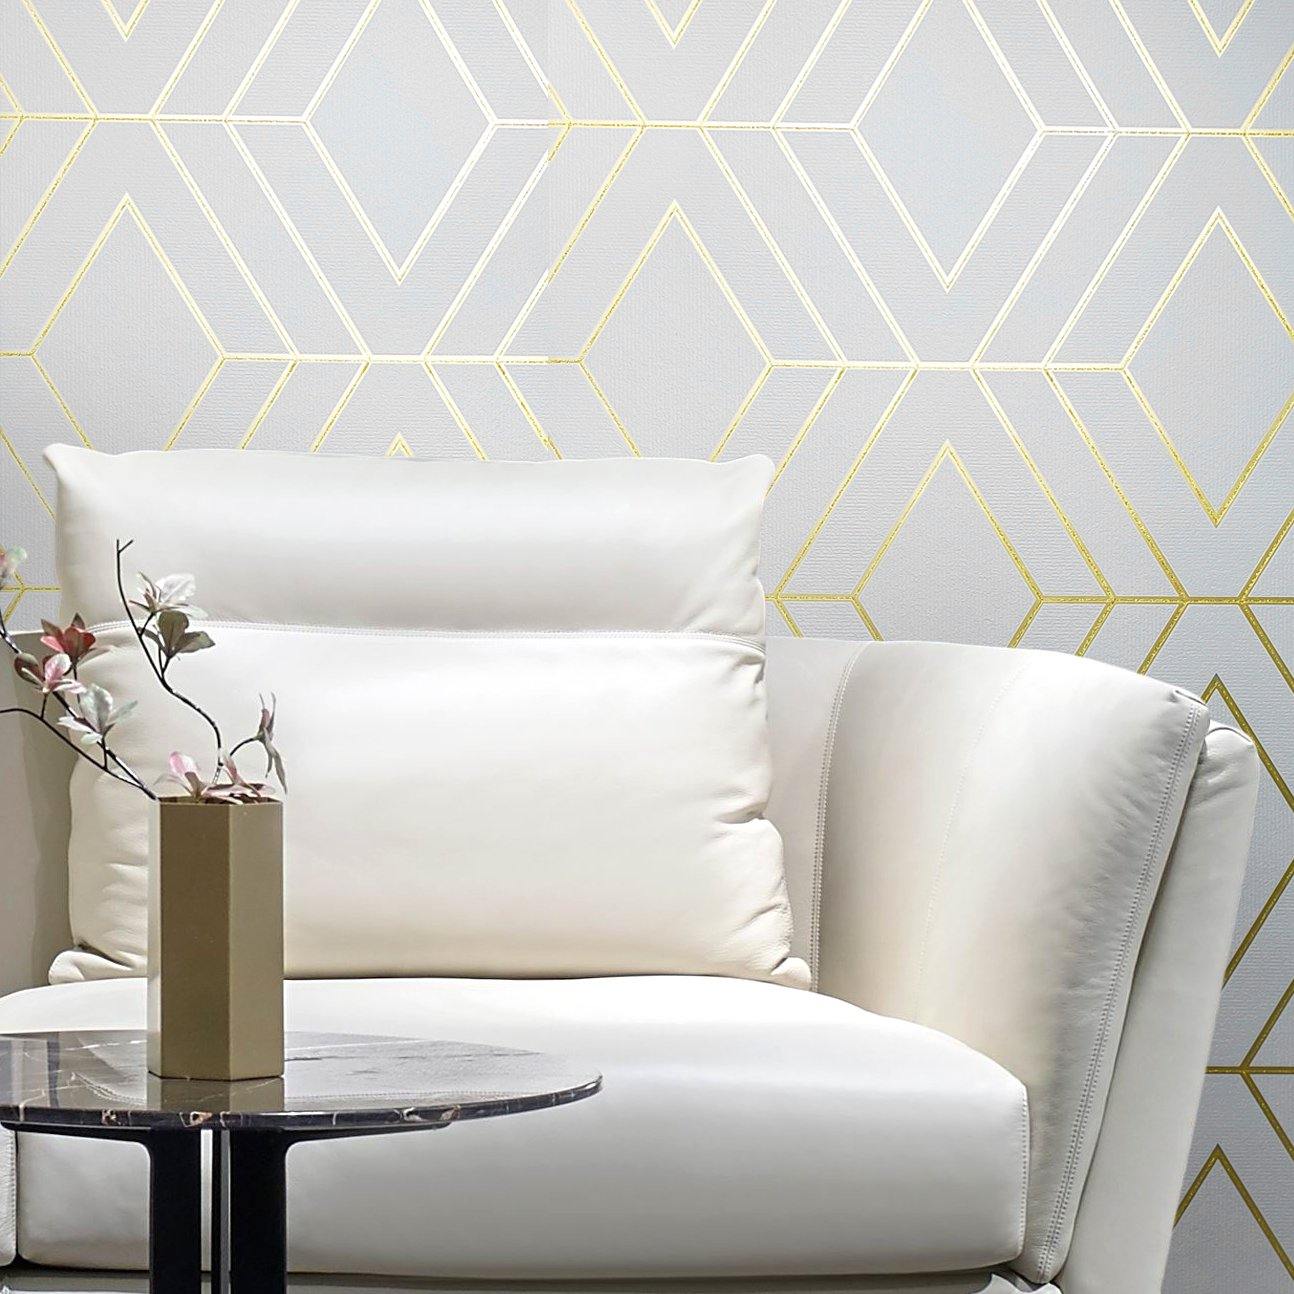 WM4234401 Geometric White Gold Glitter Diamond Textured Wallpaper –  wallcoveringsmart